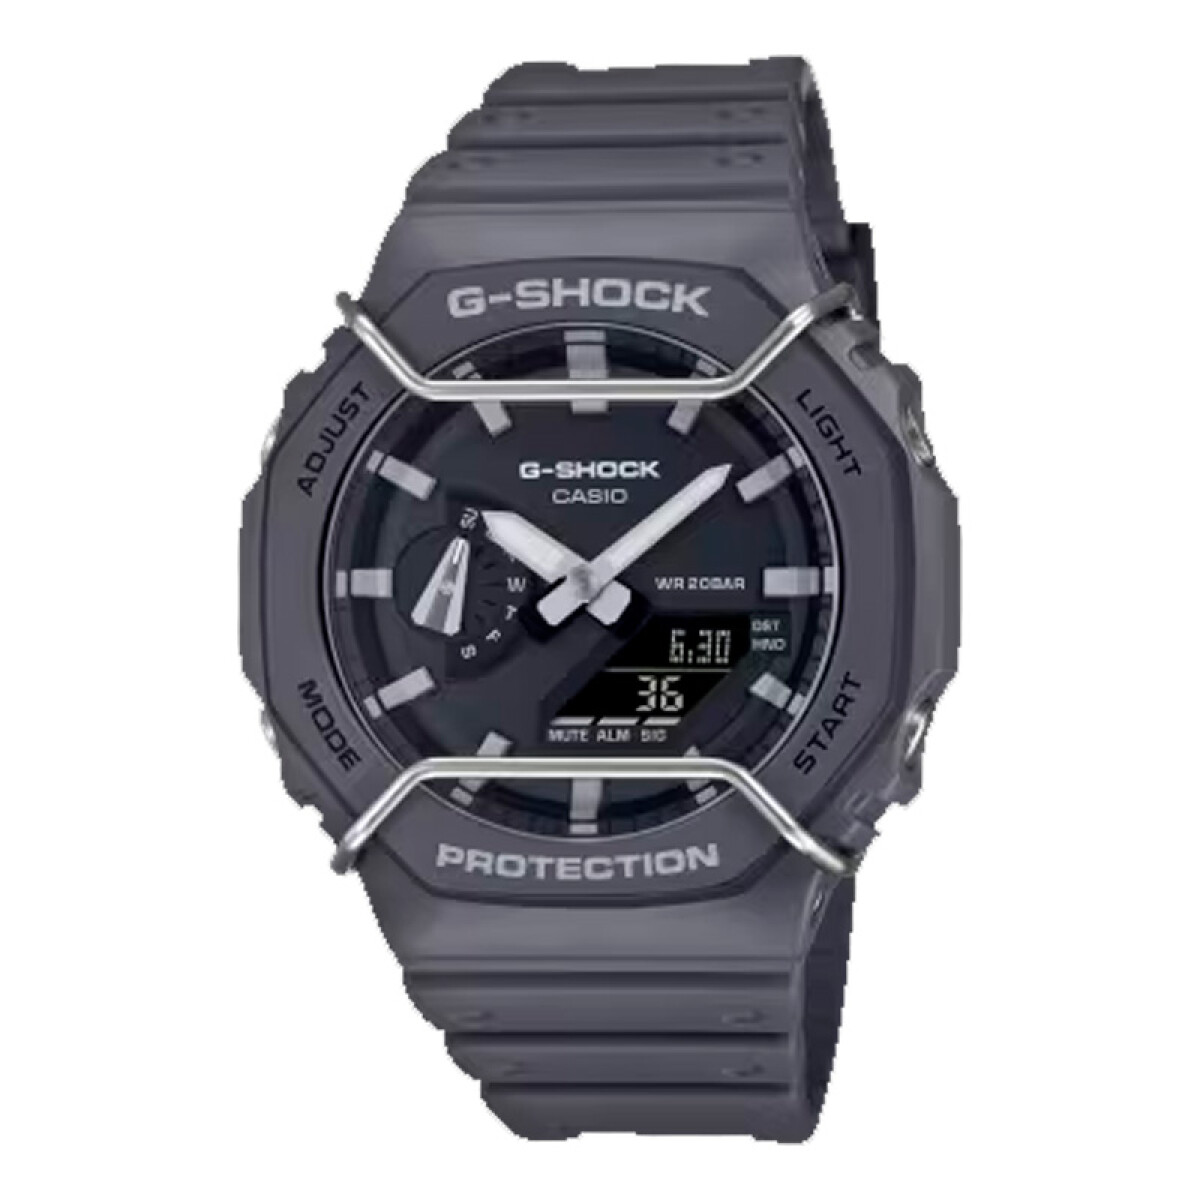 Reloj G-Shock Casio de Hombre GA-2100PT - 8ADR 